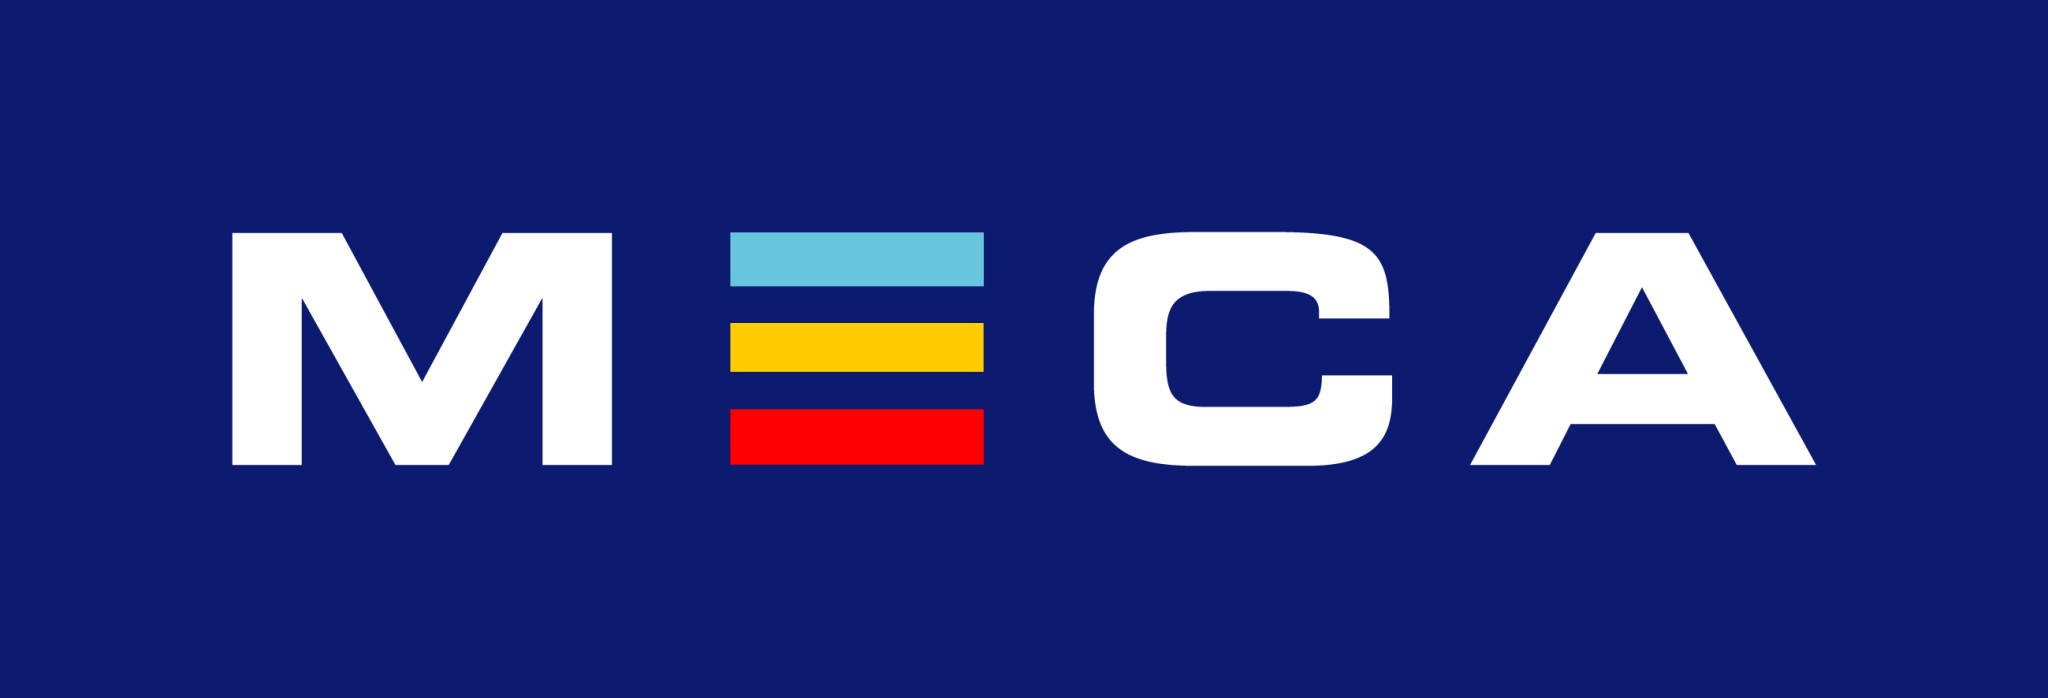 Carcenter Group i Stockholm AB - MECA logo